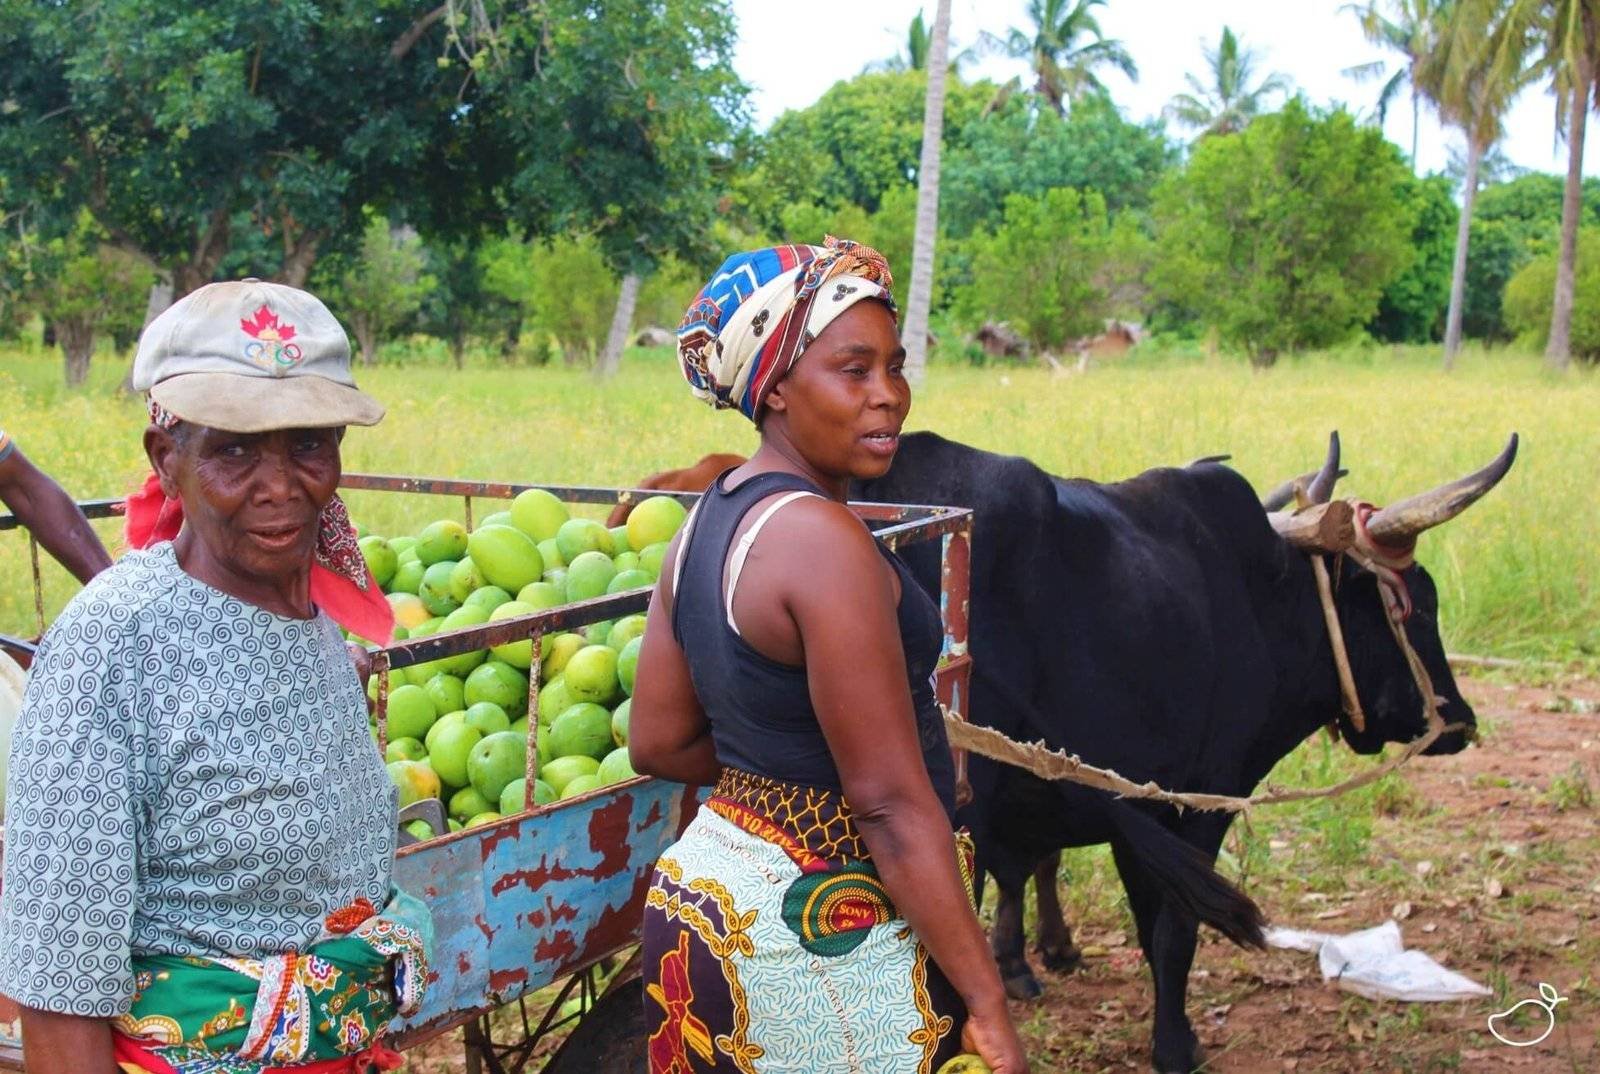 Vrouwen met verse mango's die ze naar de mango drogerij brengen in Afrika